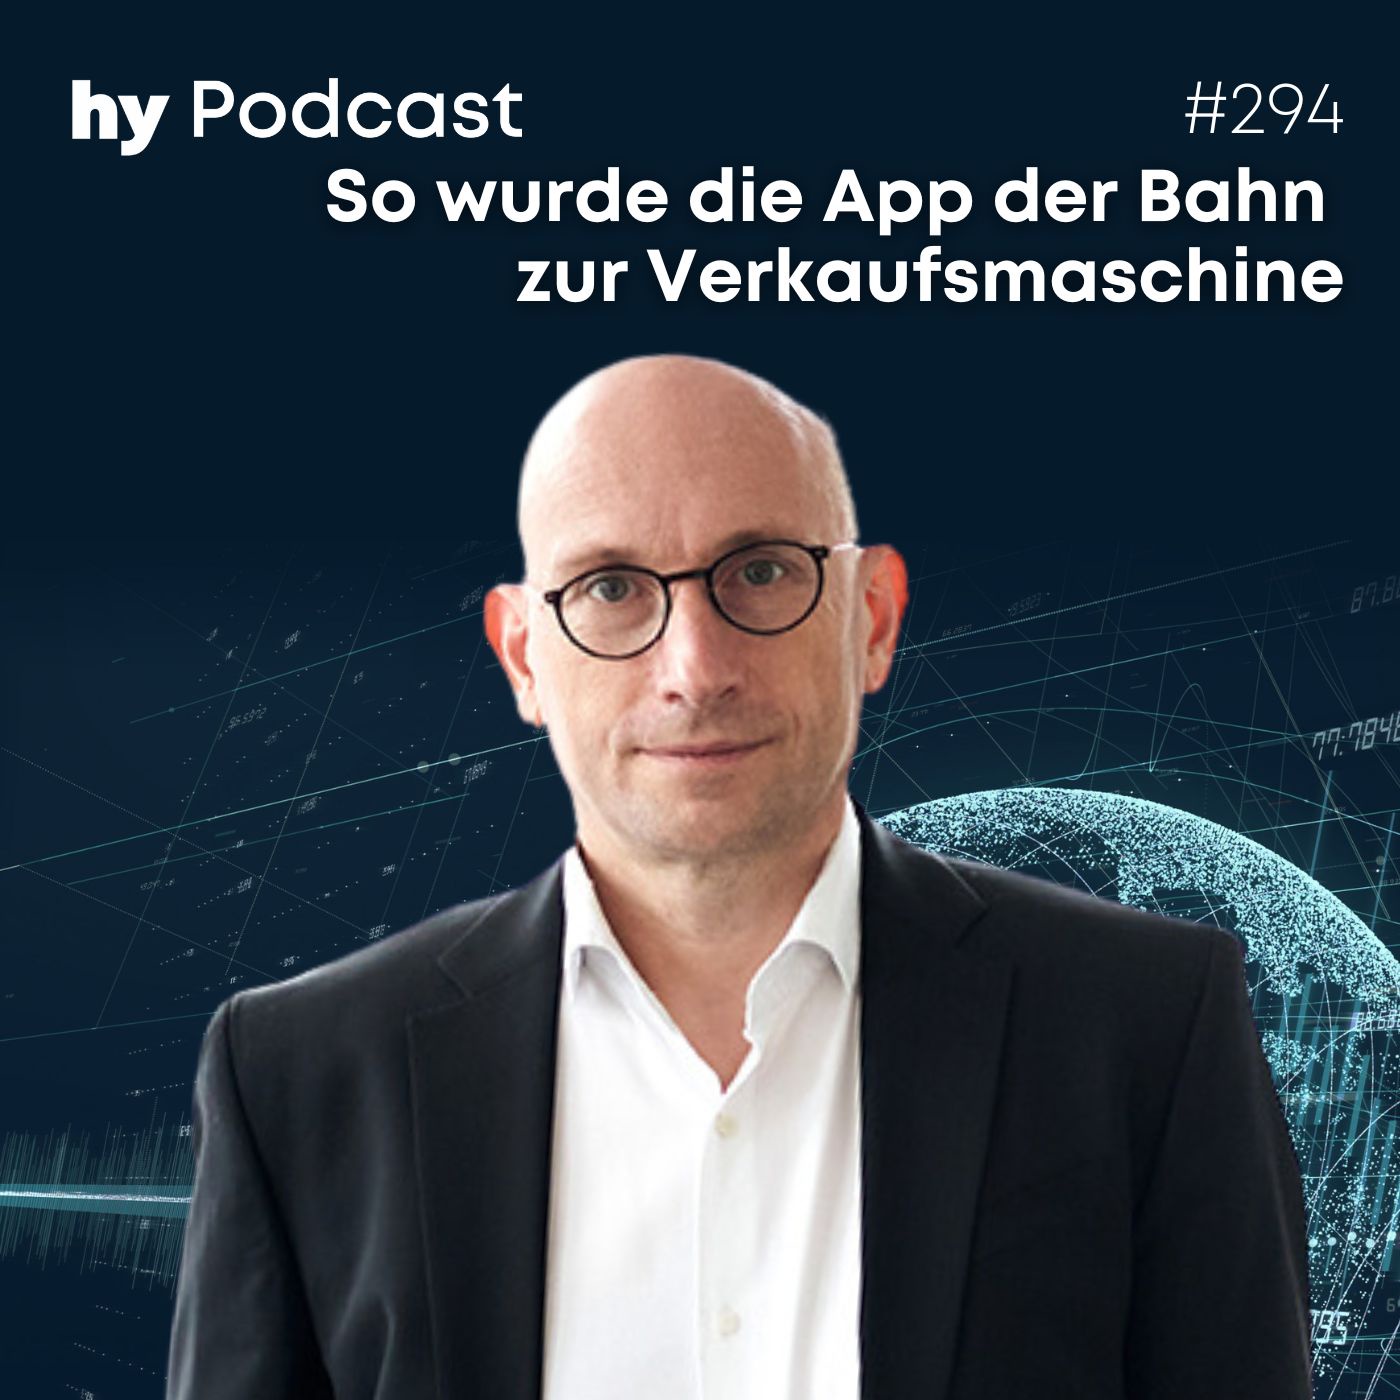 Folge 294 mit Ralf Gernhold: So wurde die App der Bahn zur Verkaufsmaschine